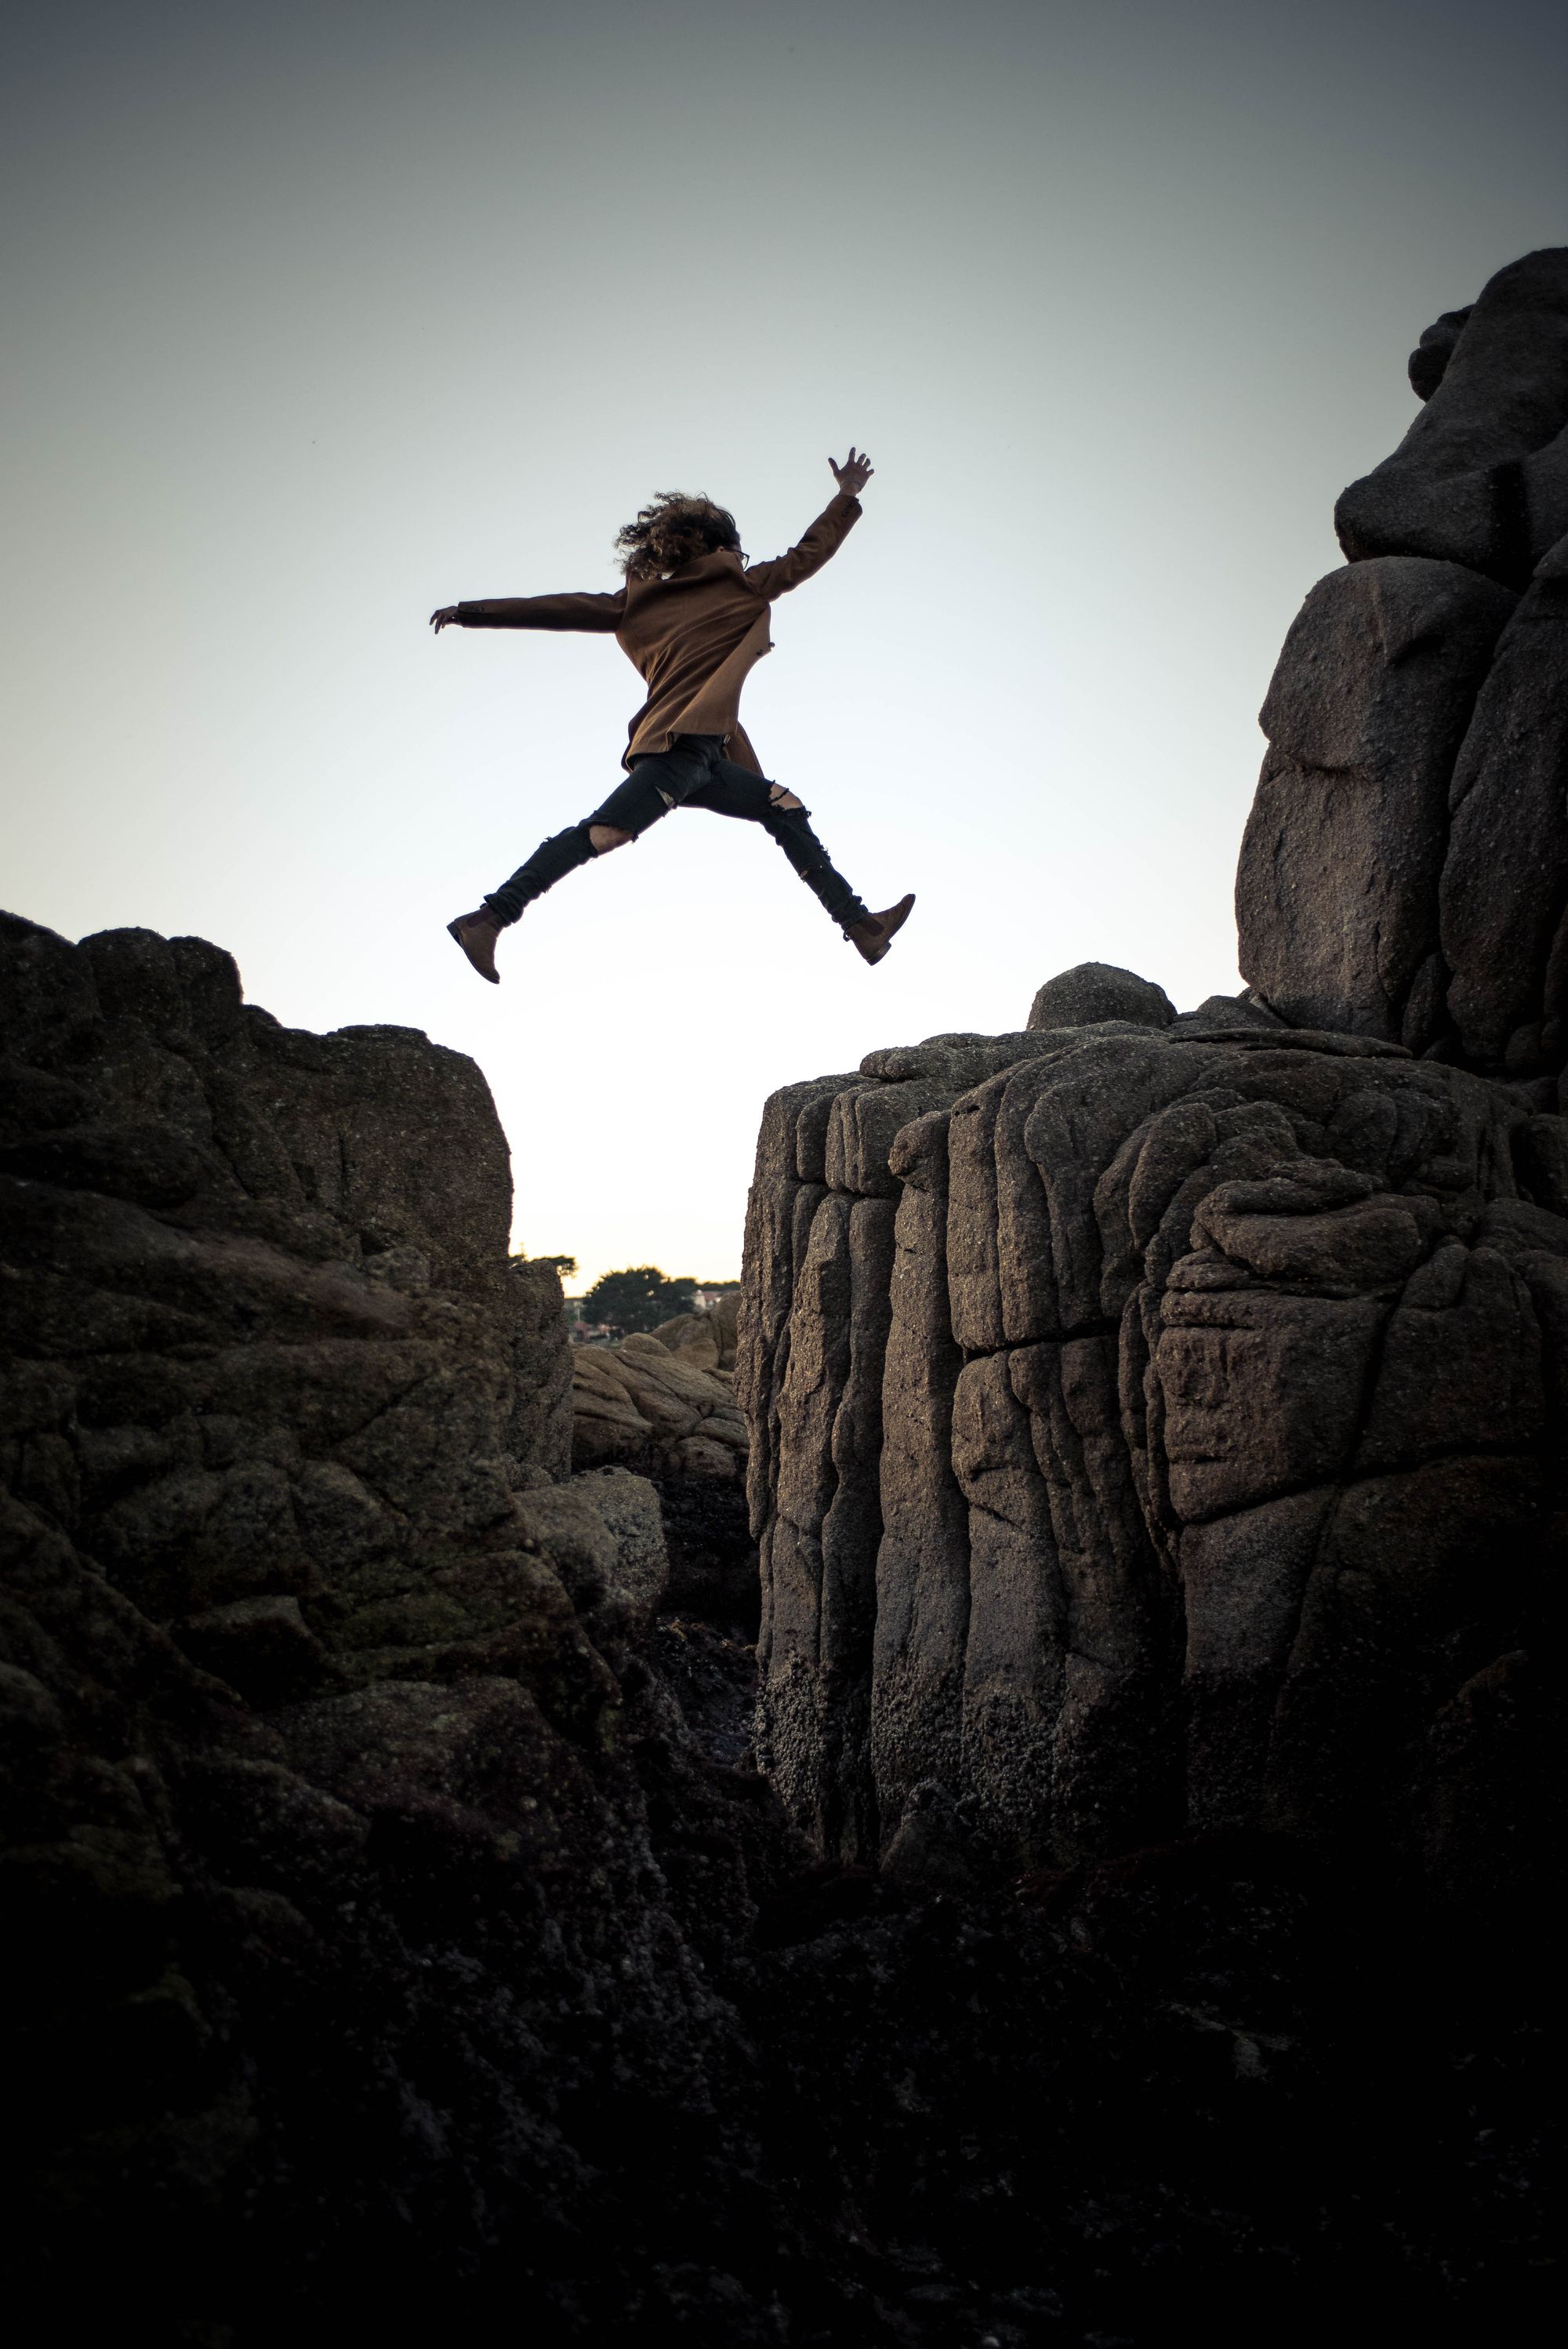 Jeune fille qui saute d’un rocher à l’autre parvient à vaincre ses peurs